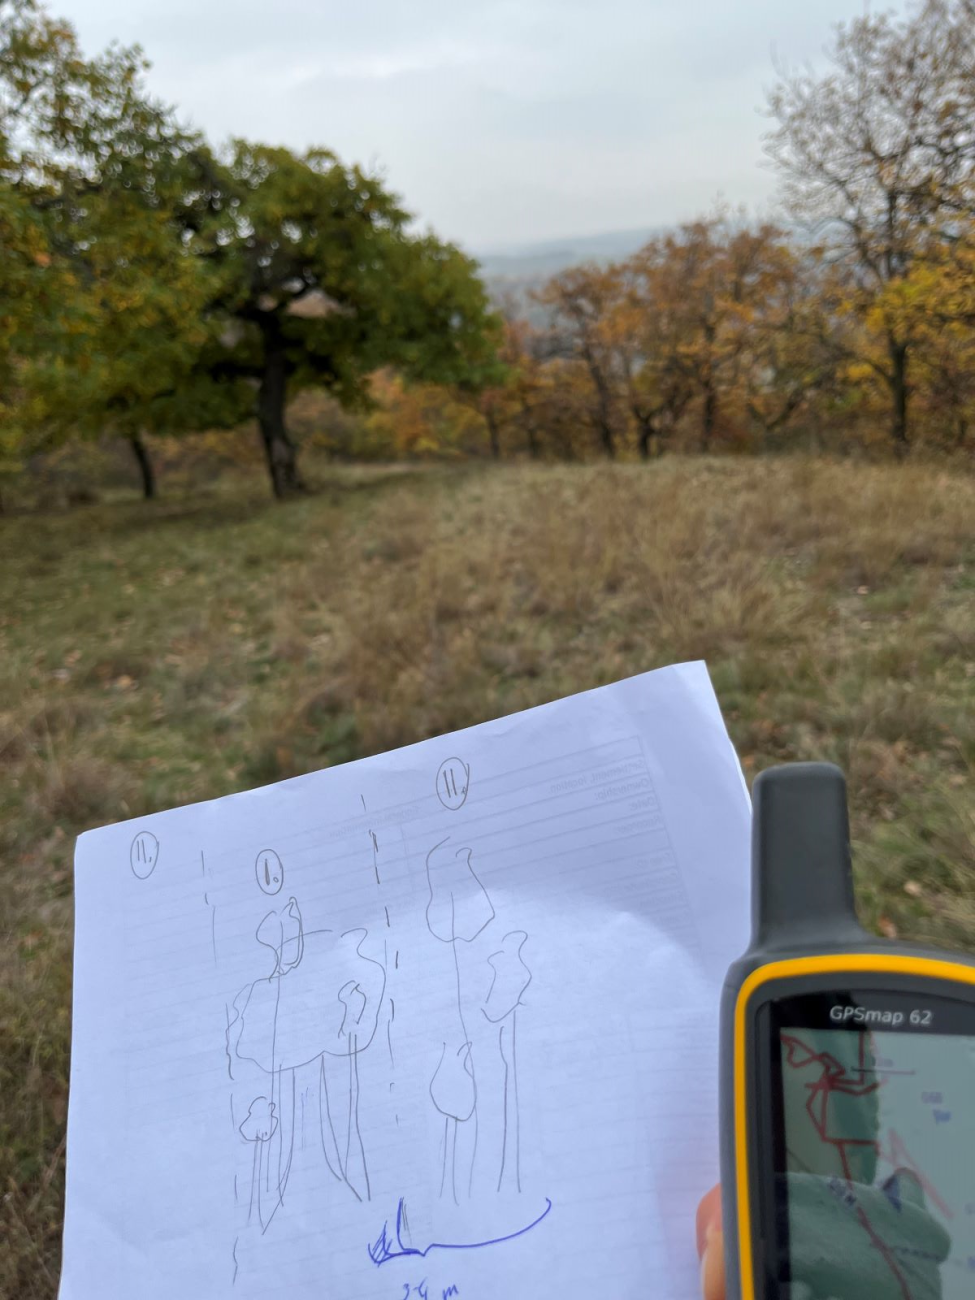 GPS-Gerät und Zeichnung von Bäumen vor einem Wald